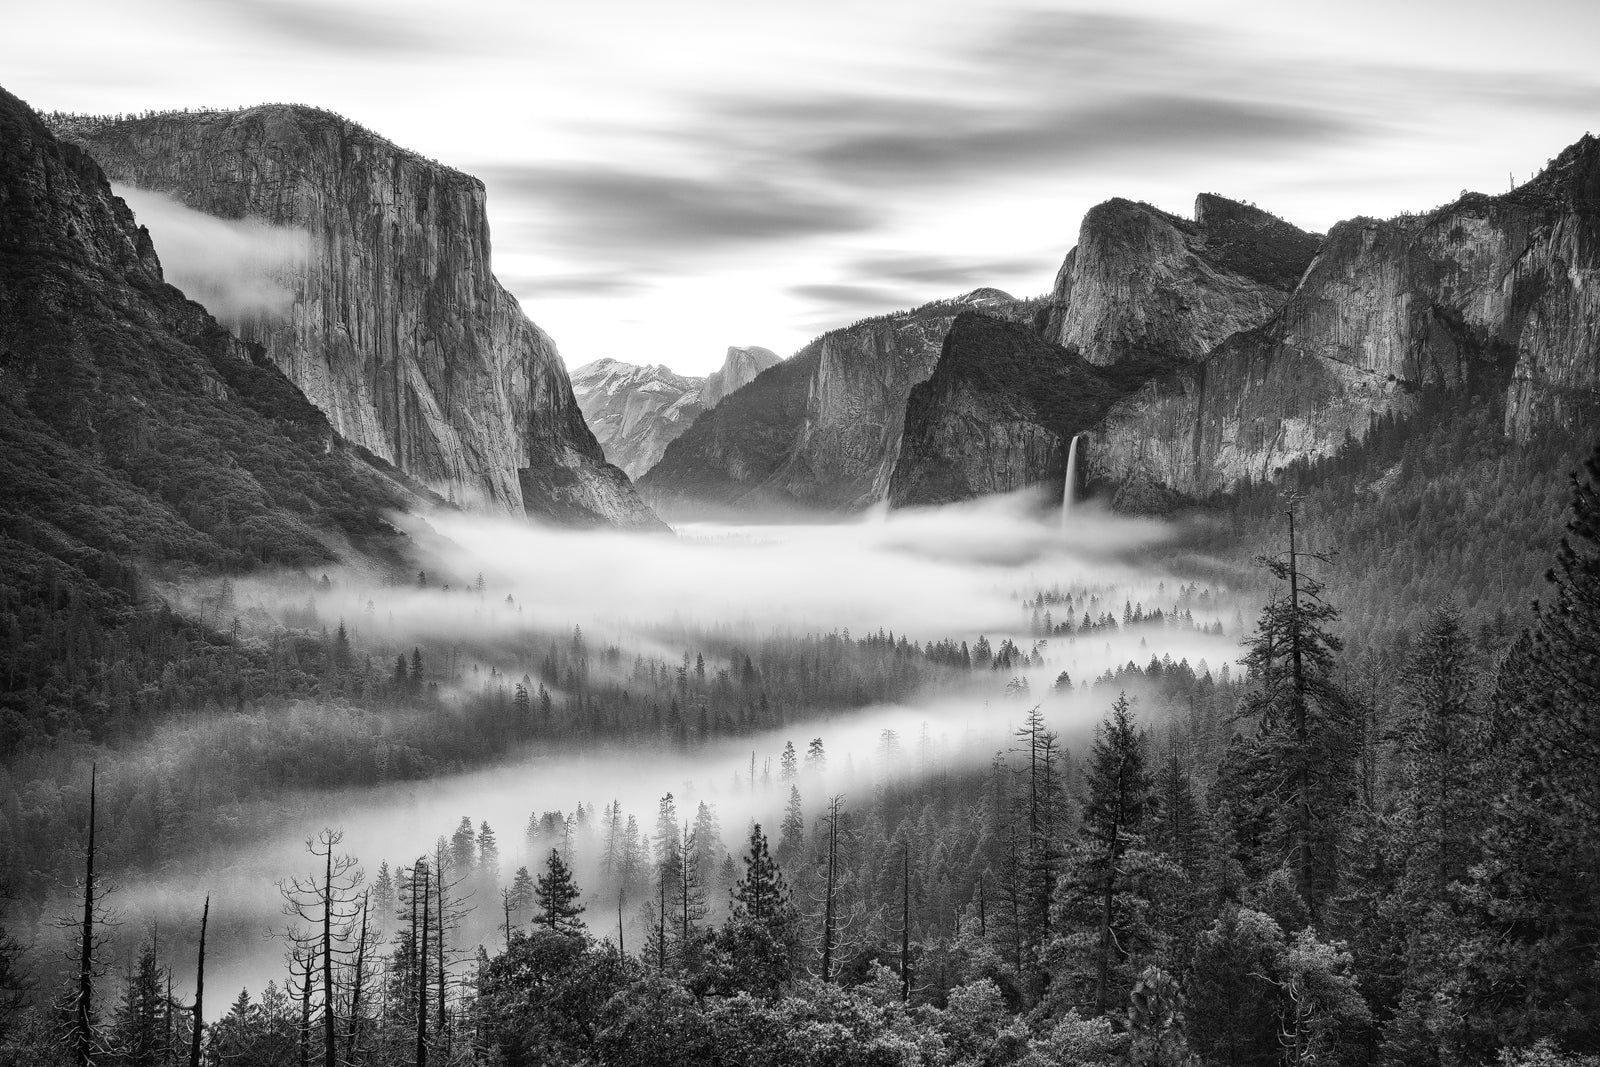 Foto Gheorghe Popa - Yosemite Valley, California U.S.A.